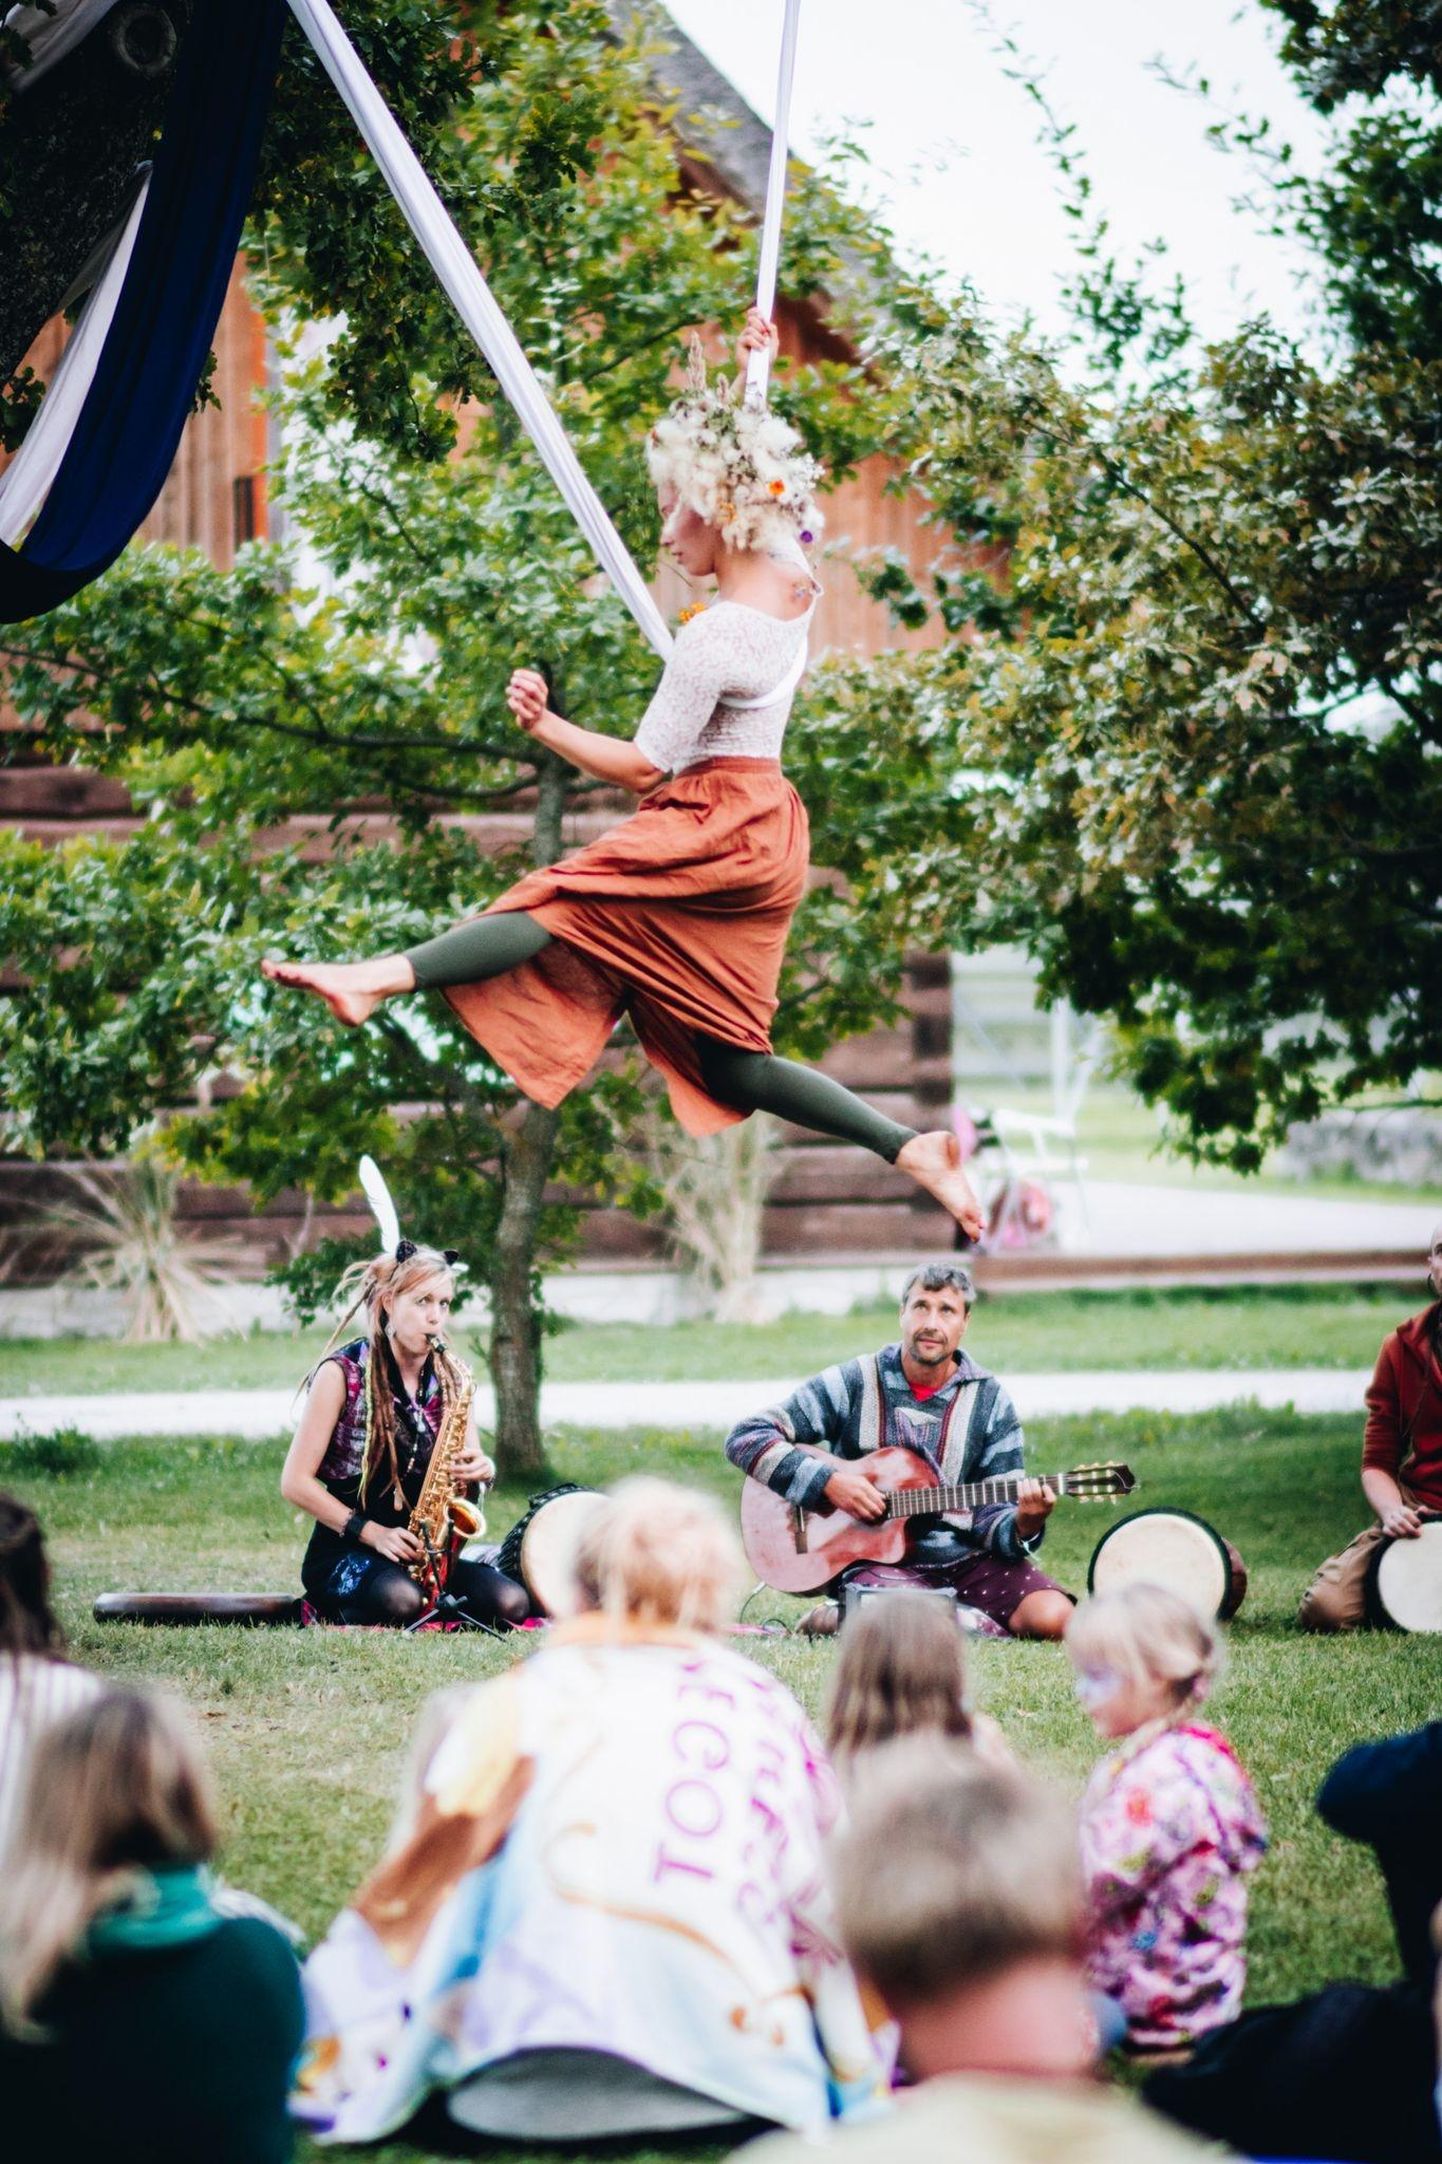 Aprilli alguses kinnitab Viljandis kanda loovuse festival.